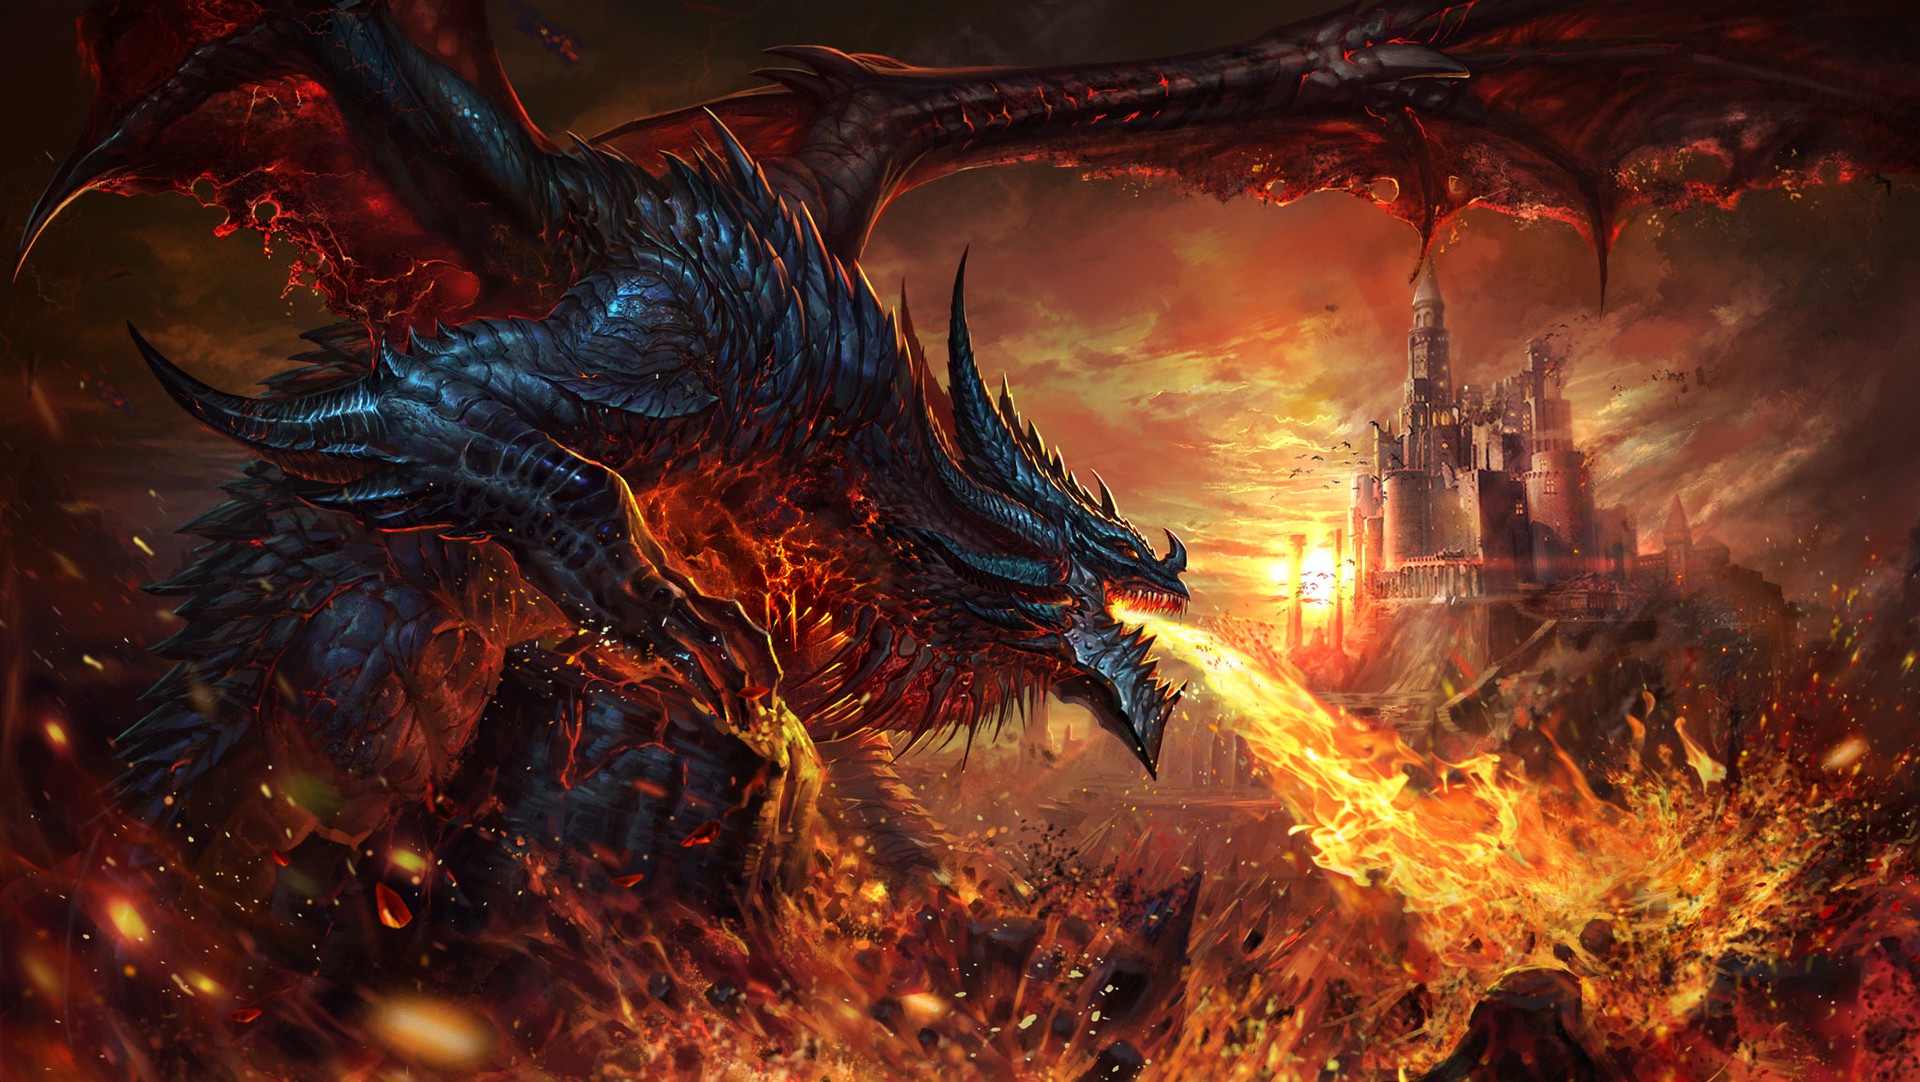 Dragon Wallpaper  Hình Ảnh Rồng Đẹp Nhất